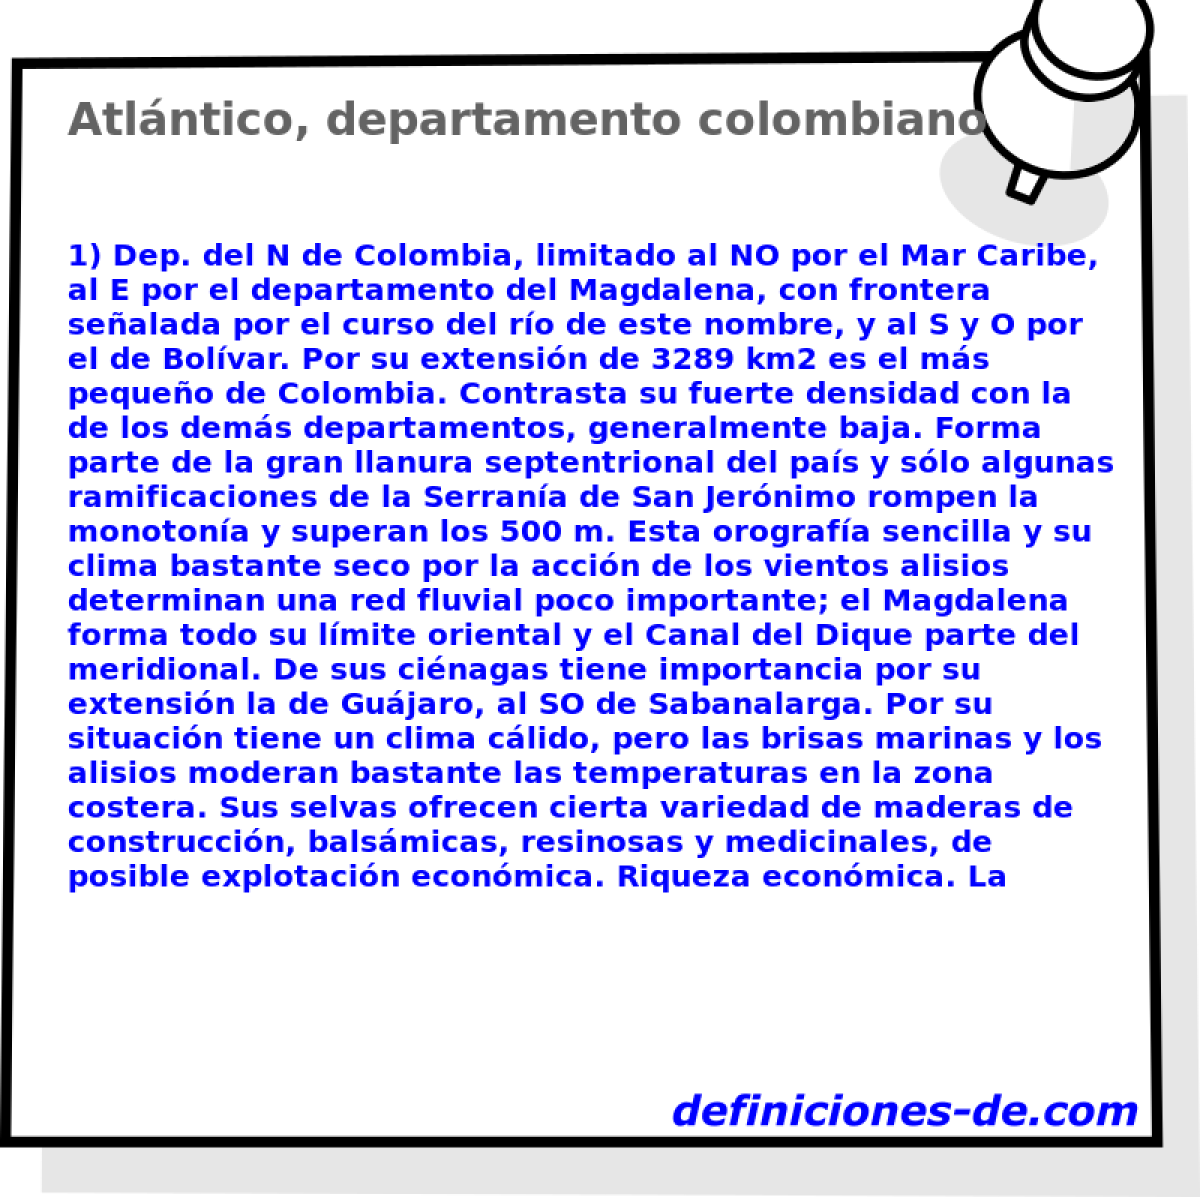 Atlntico, departamento colombiano 